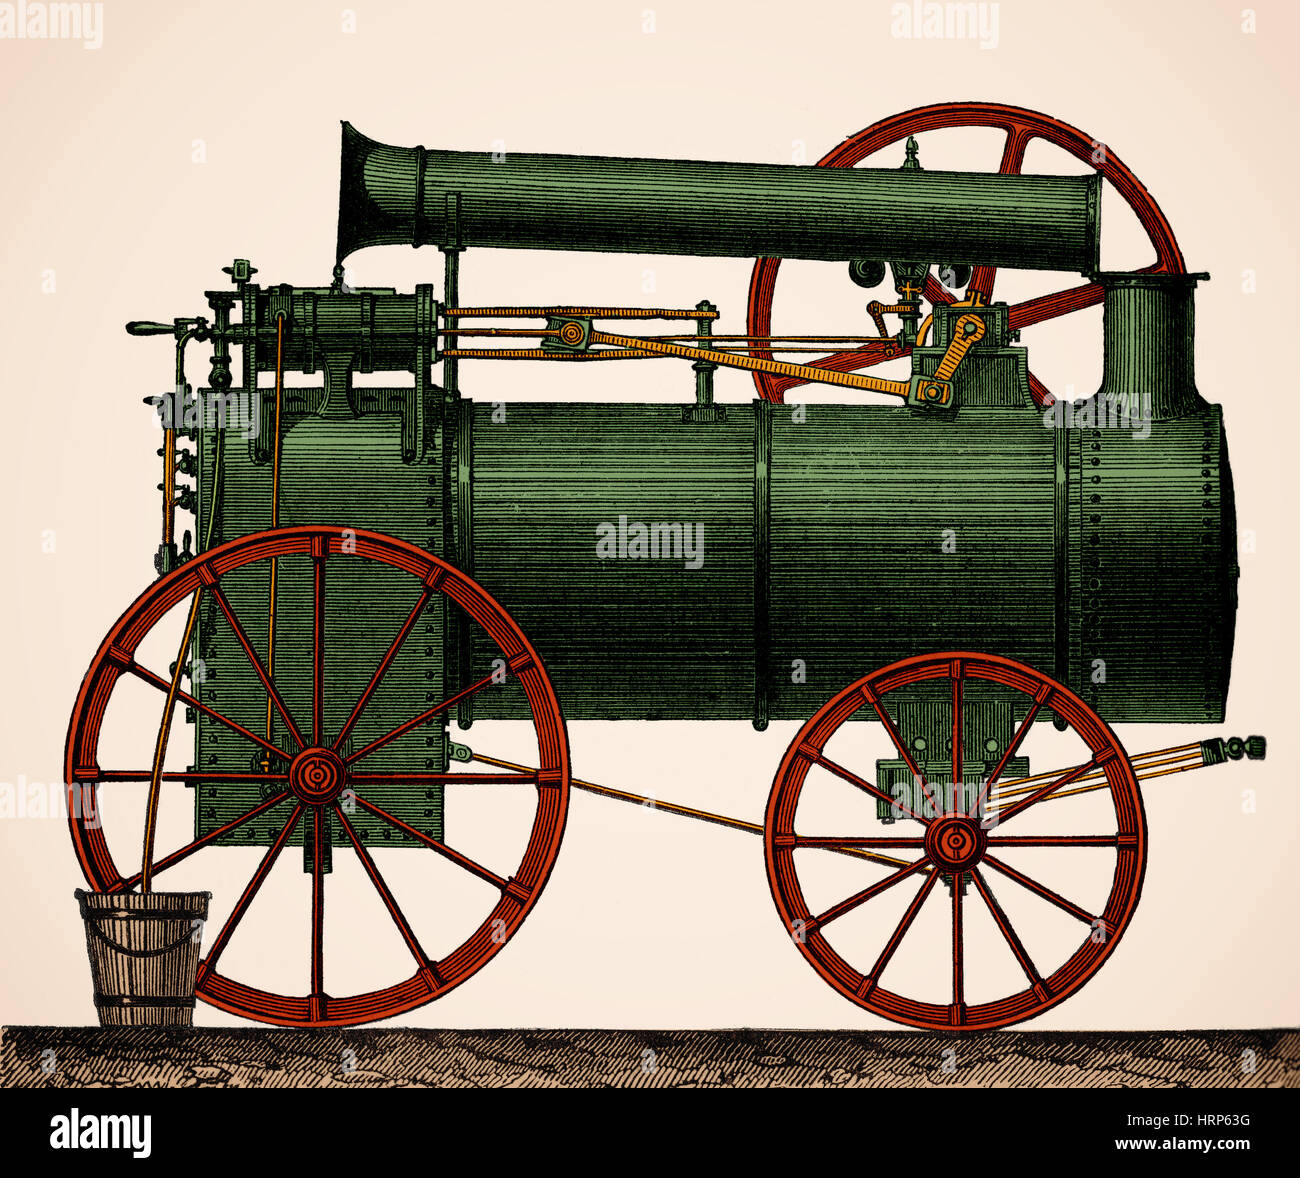 Maquina de vapor siglo xix fotografías e imágenes de alta resolución - Alamy